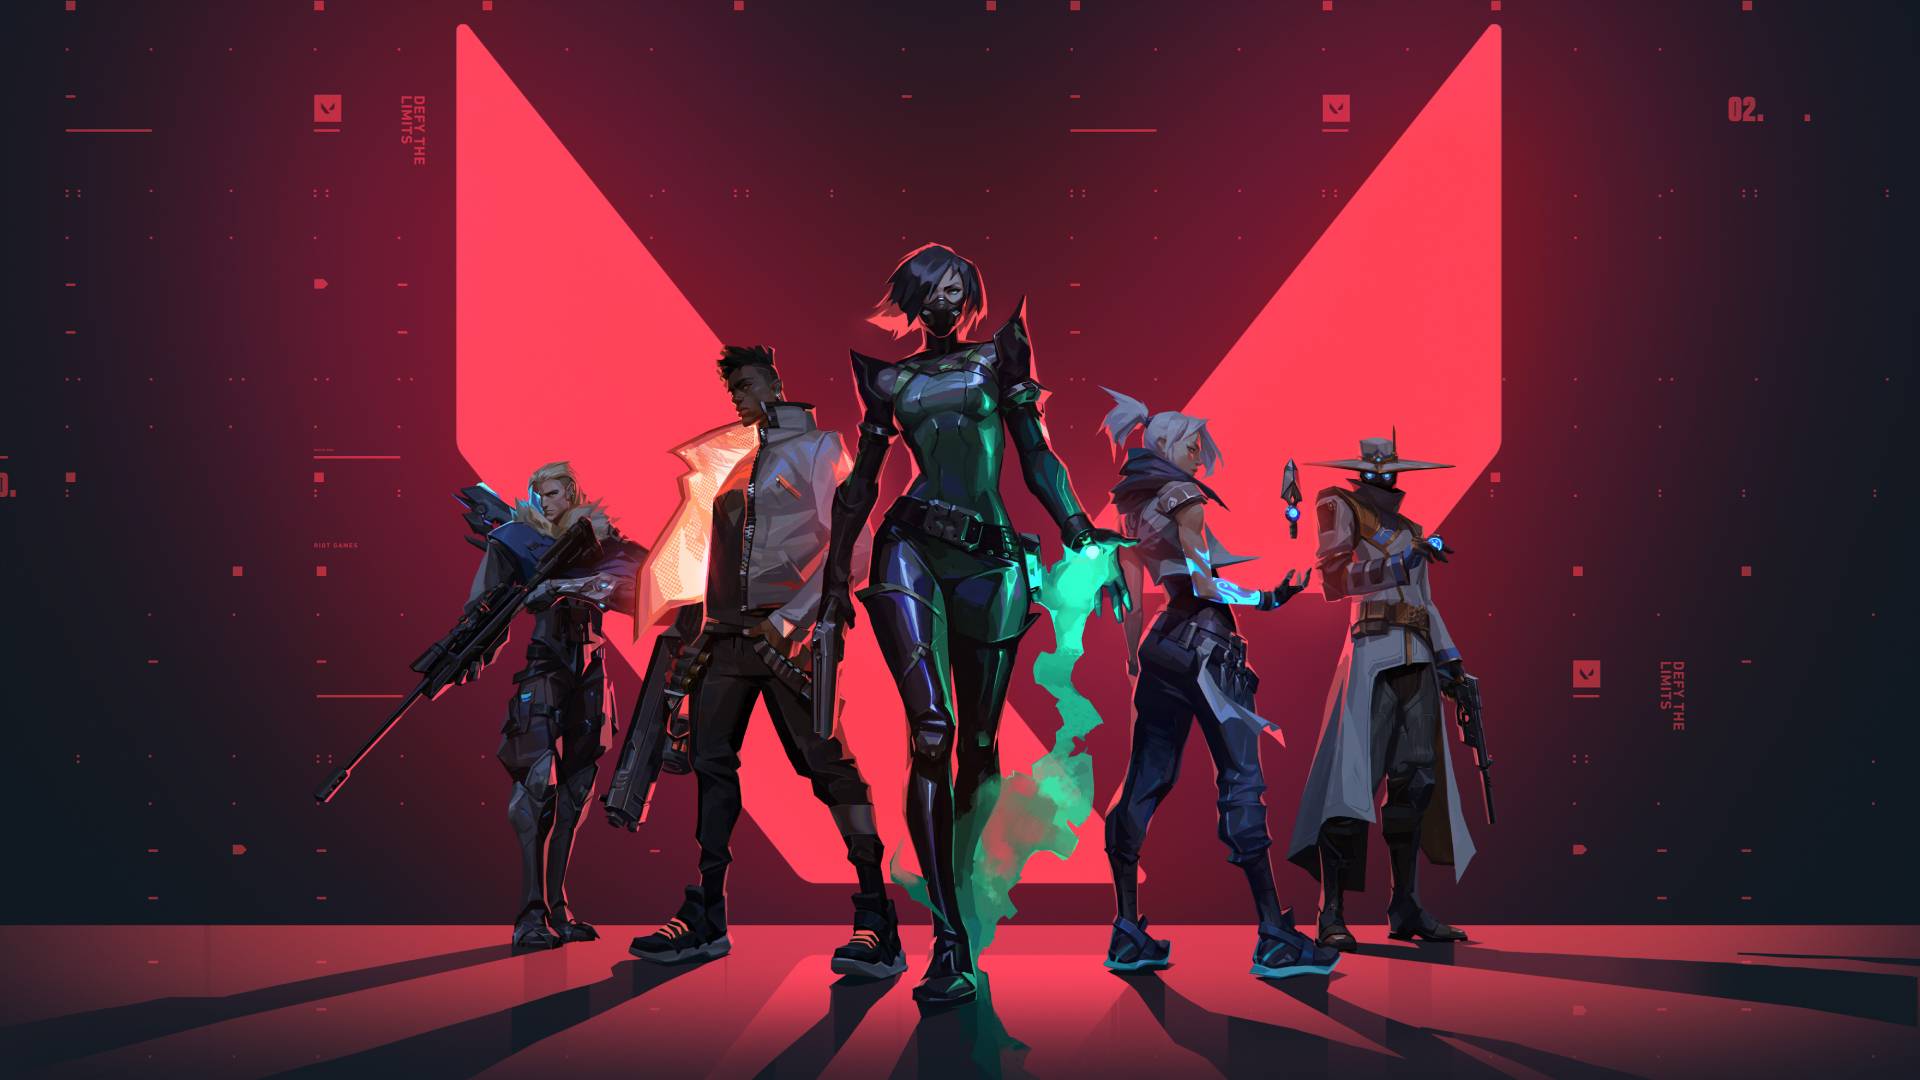 Eine Gruppe von Zeichentrickfiguren steht in einer Fünfergruppe vor einem riesigen leuchtend roten V auf einem Hintergrund im Matrix-Stil